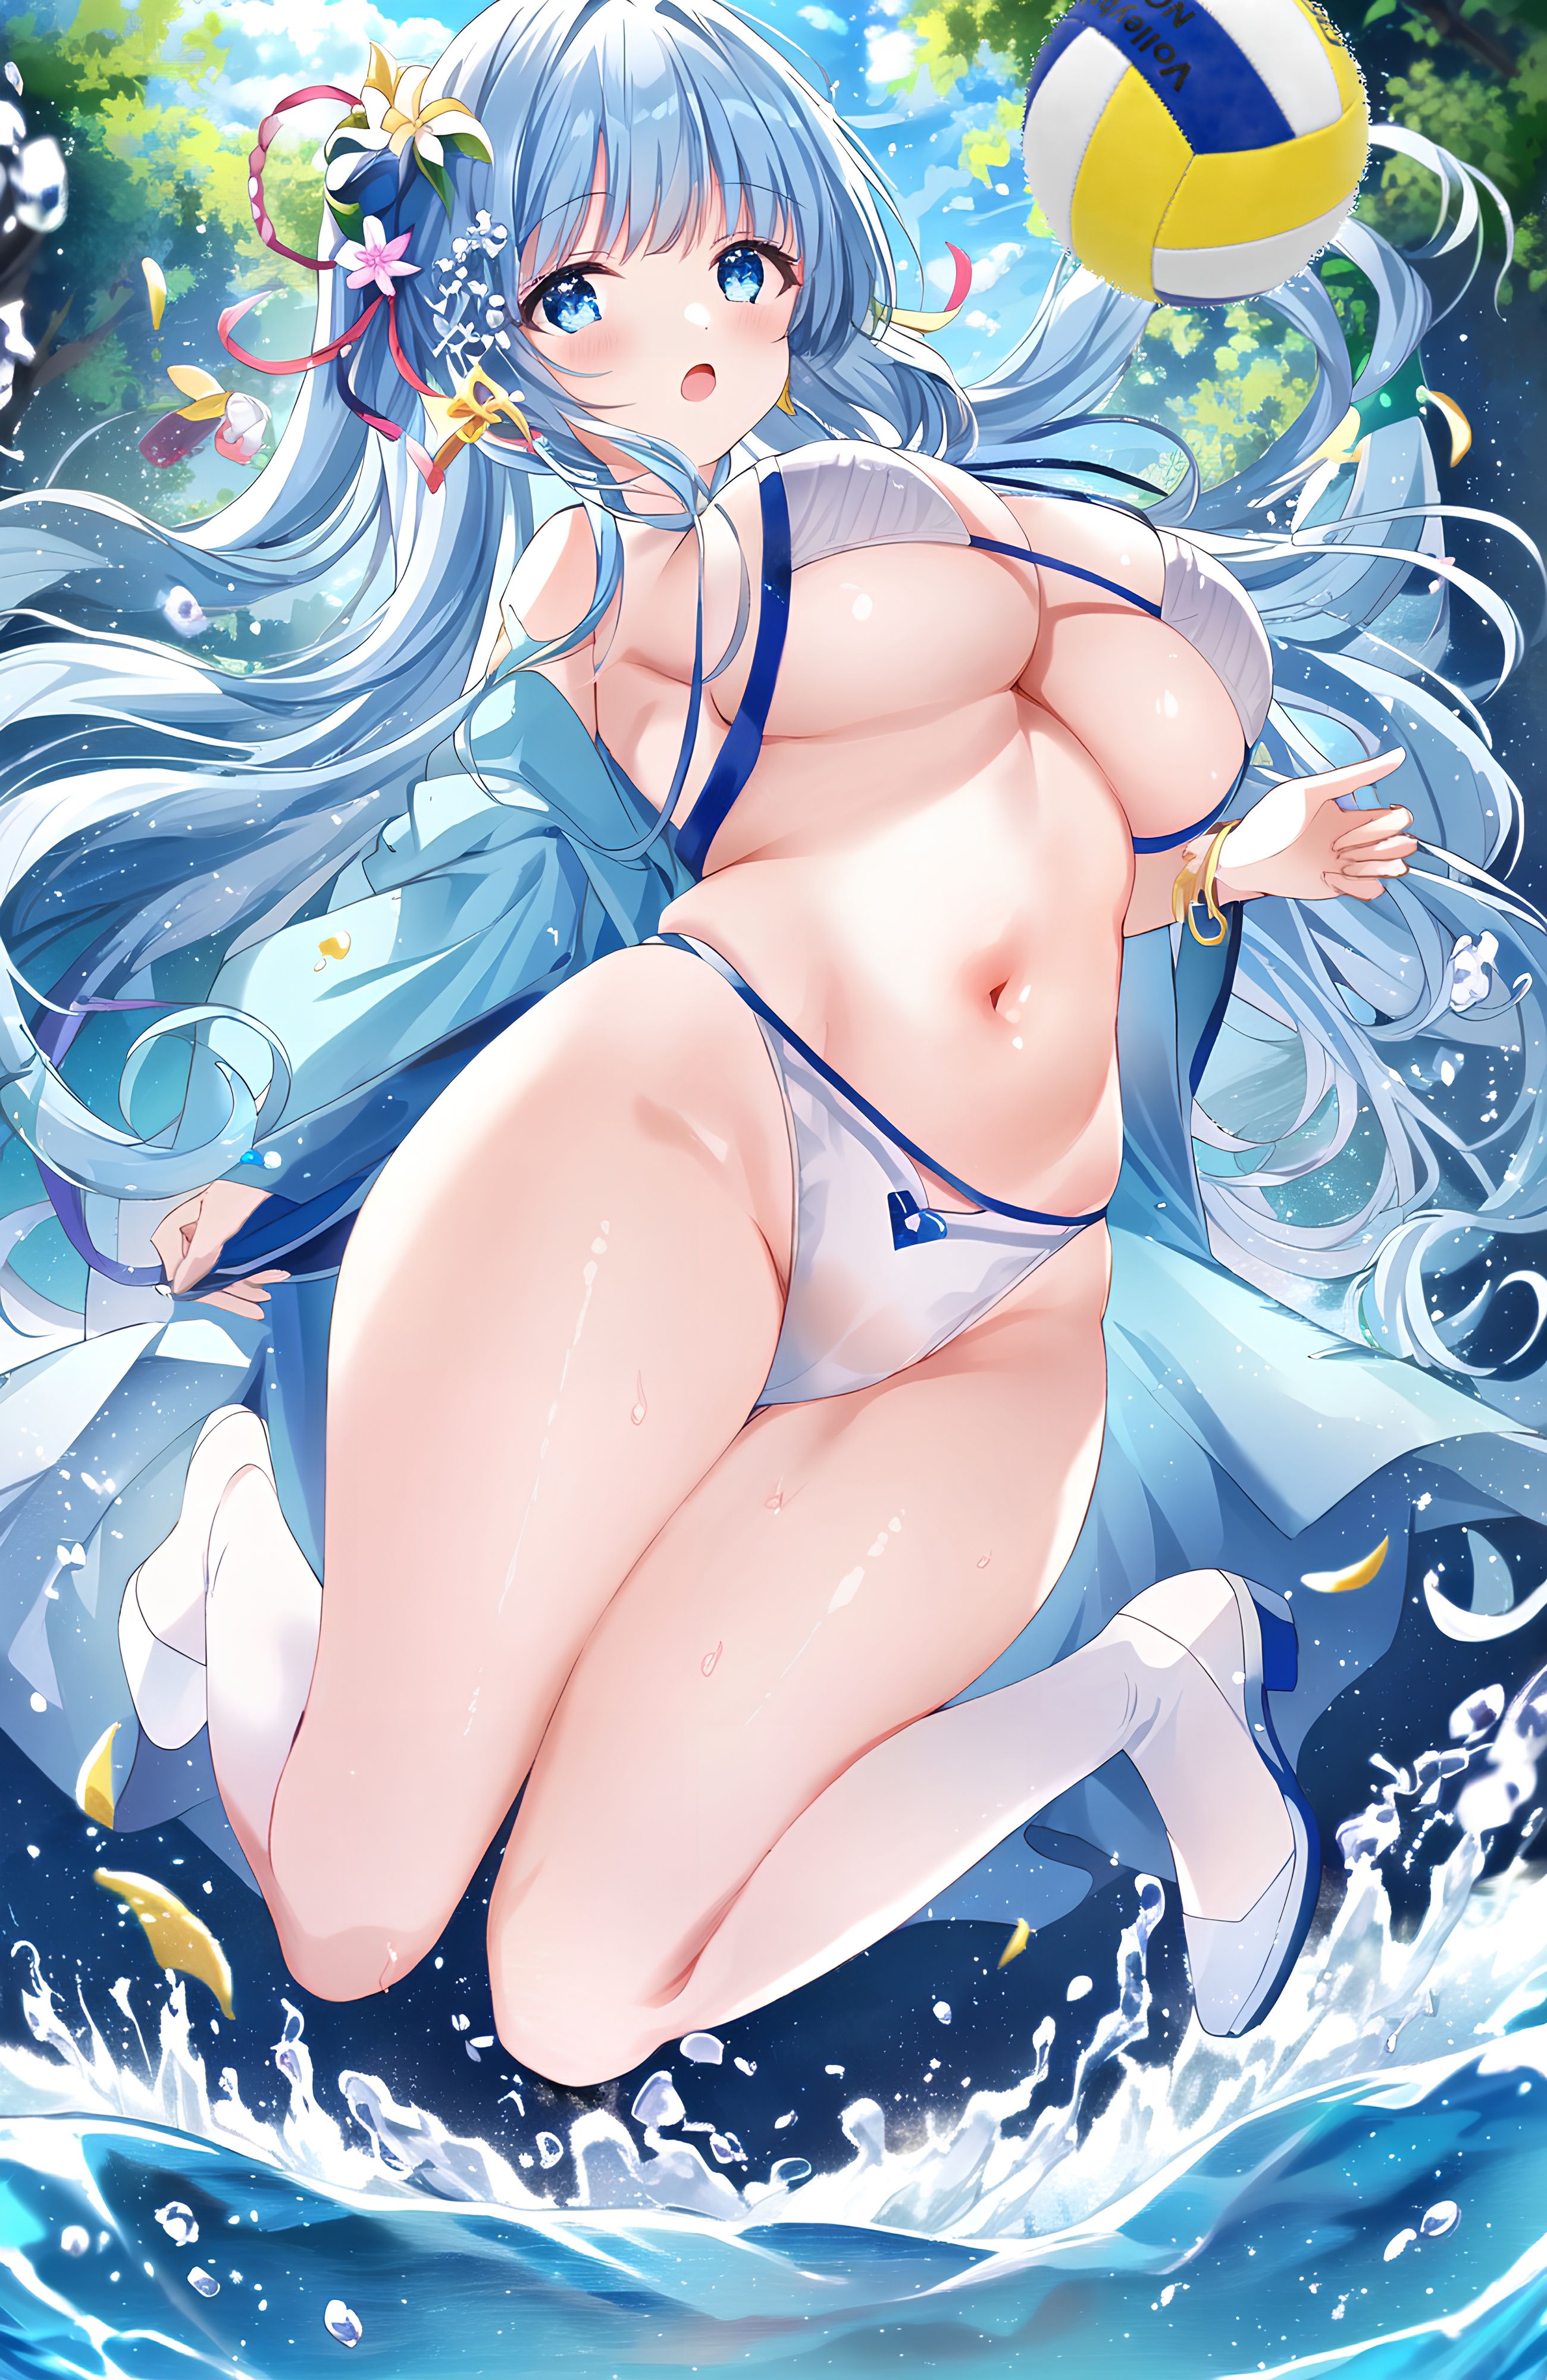 Anime 2600x4000 big boobs water bikini flower in hair belly petals thighs beach ball jumping underboob long hair blue hair blue eyes